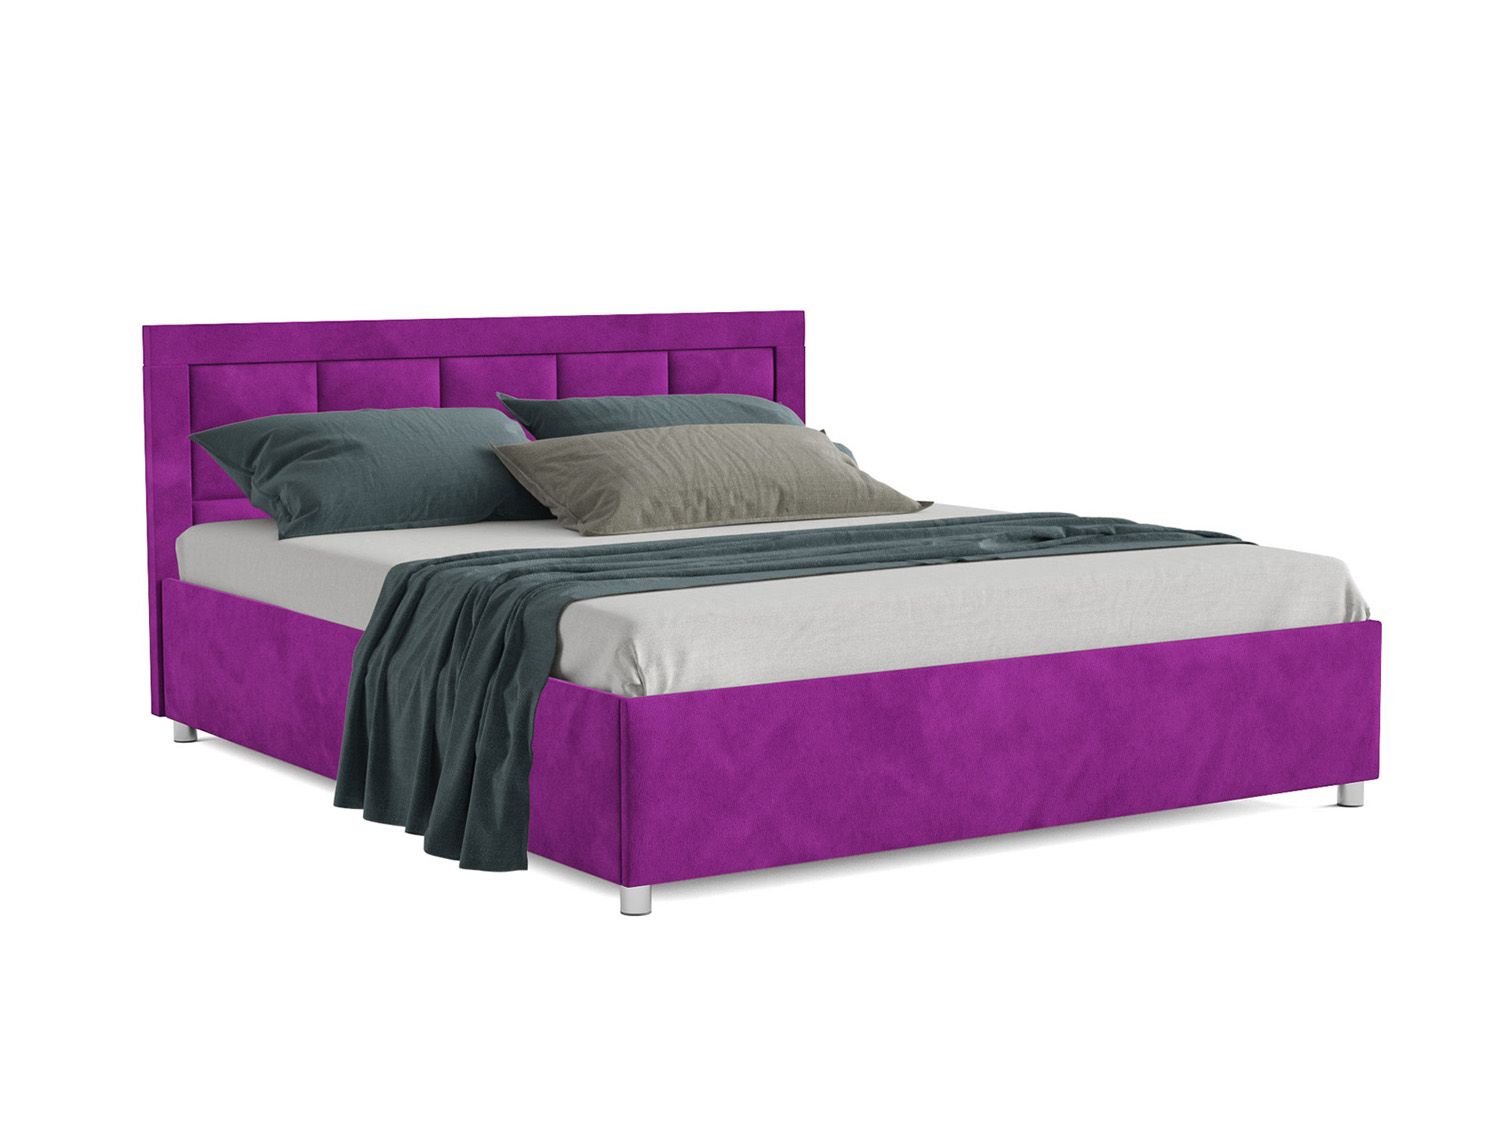 Кровать Версаль фиолет 140